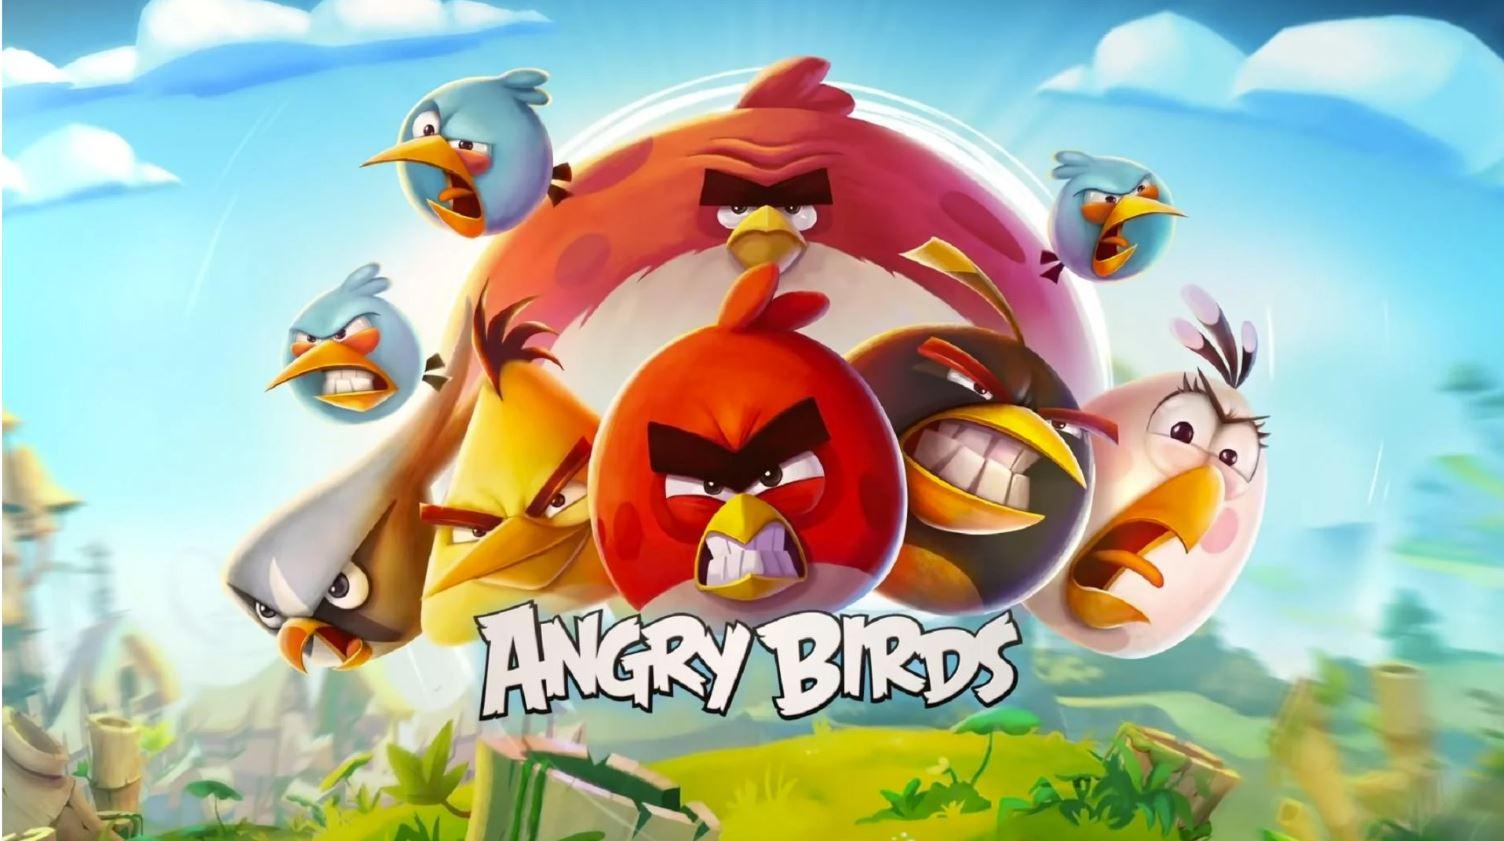 Angry Birds sega acquisition arabgamerz عرب جيمرز استحواذ سيغا على انجري بيردز